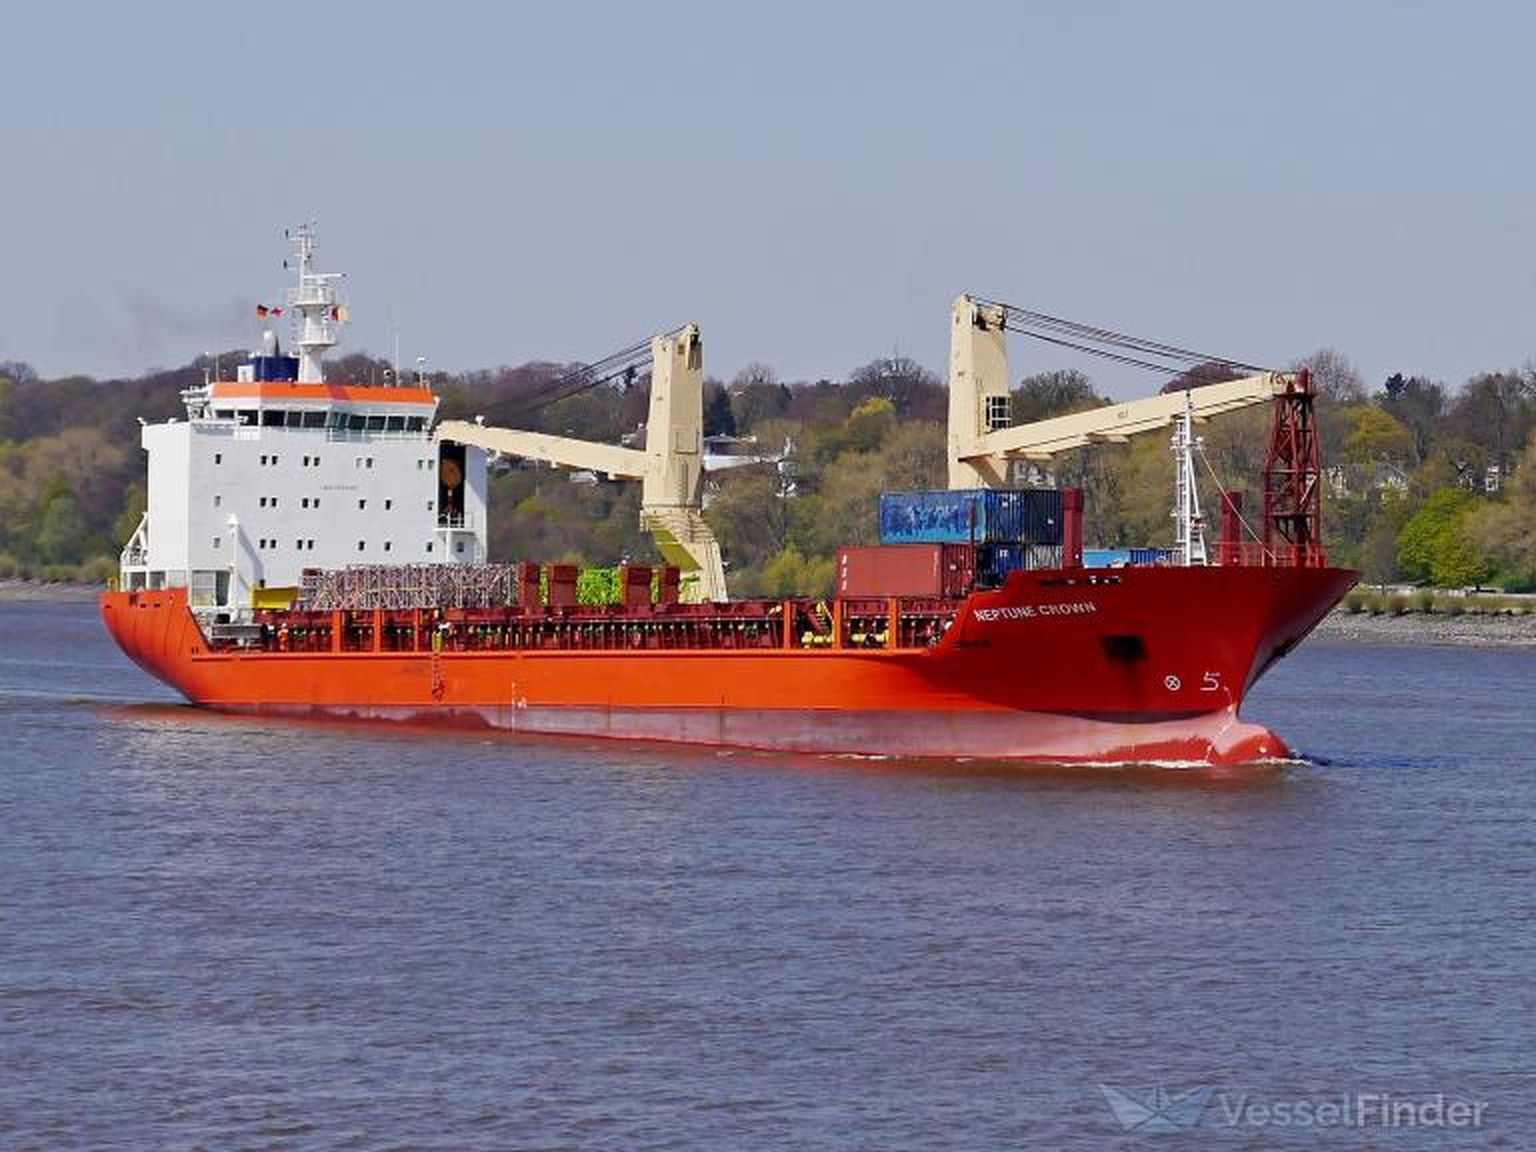 Venemaa laev Maia-1, mille India kohus arestis Eesti firmale maksmata kütusearve tõttu